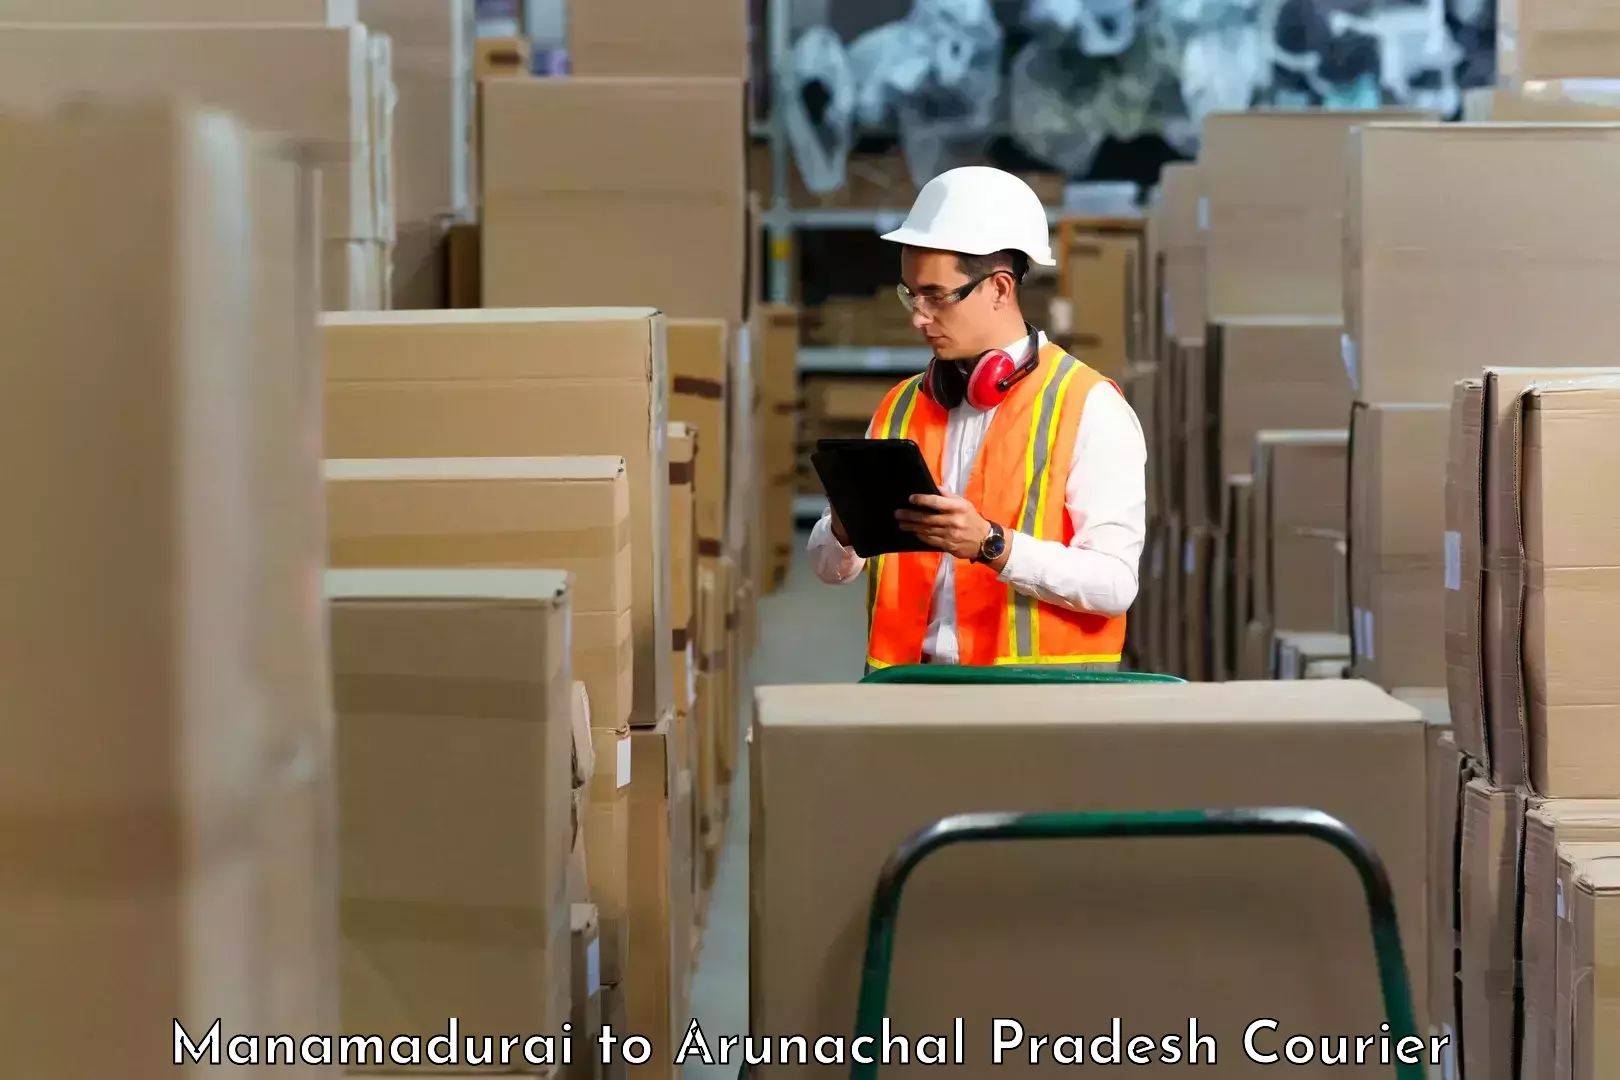 Advanced shipping technology Manamadurai to Tezu